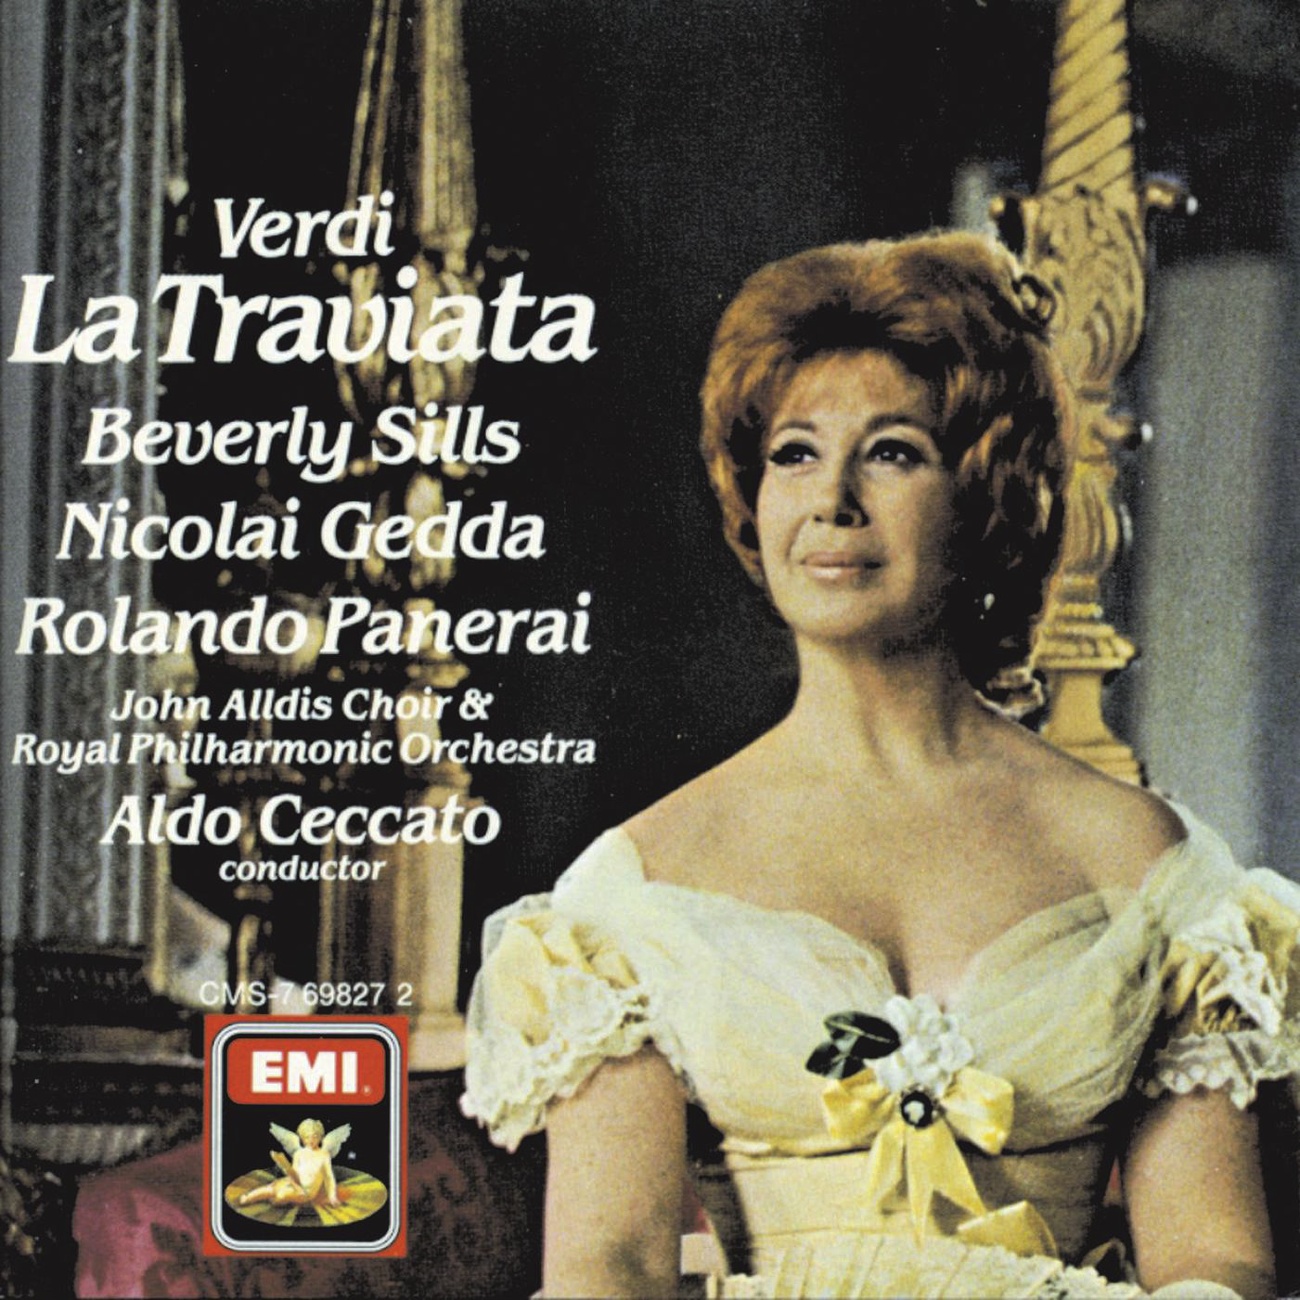 La Traviata (1988 Digital Remaster), Act I: Sempre libera (Violetta)